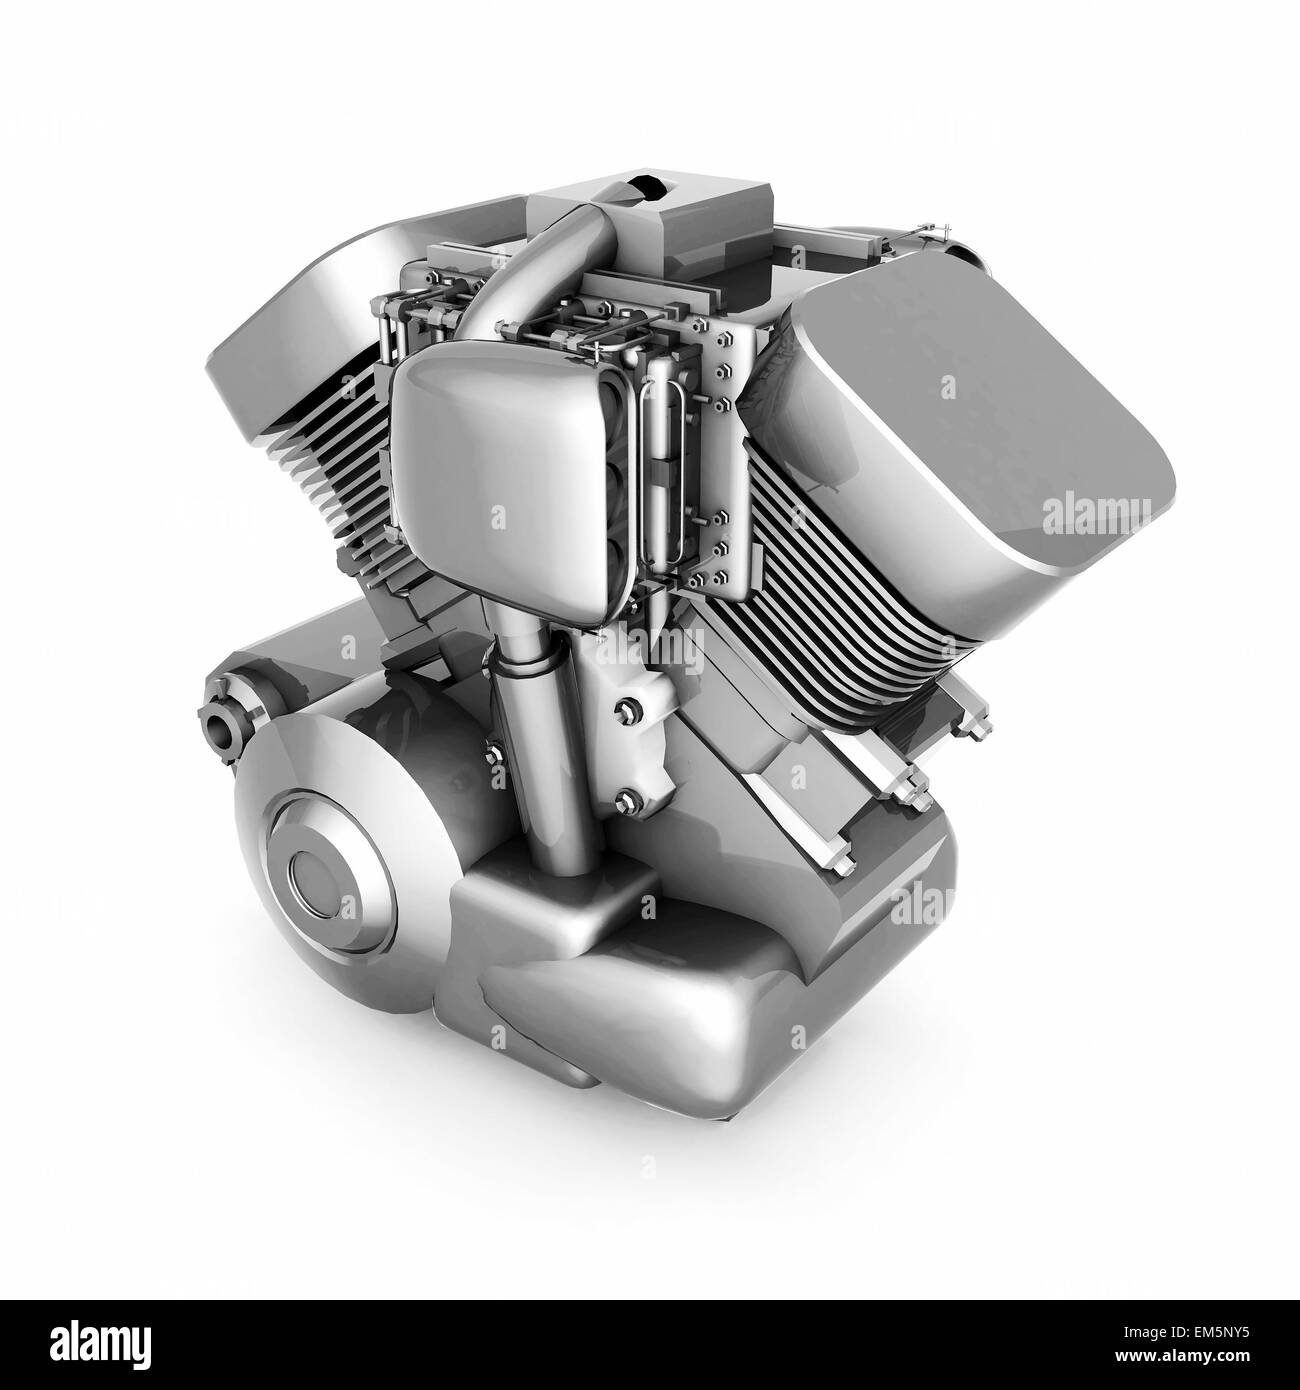 chromed motorcycle engine Stock Photo